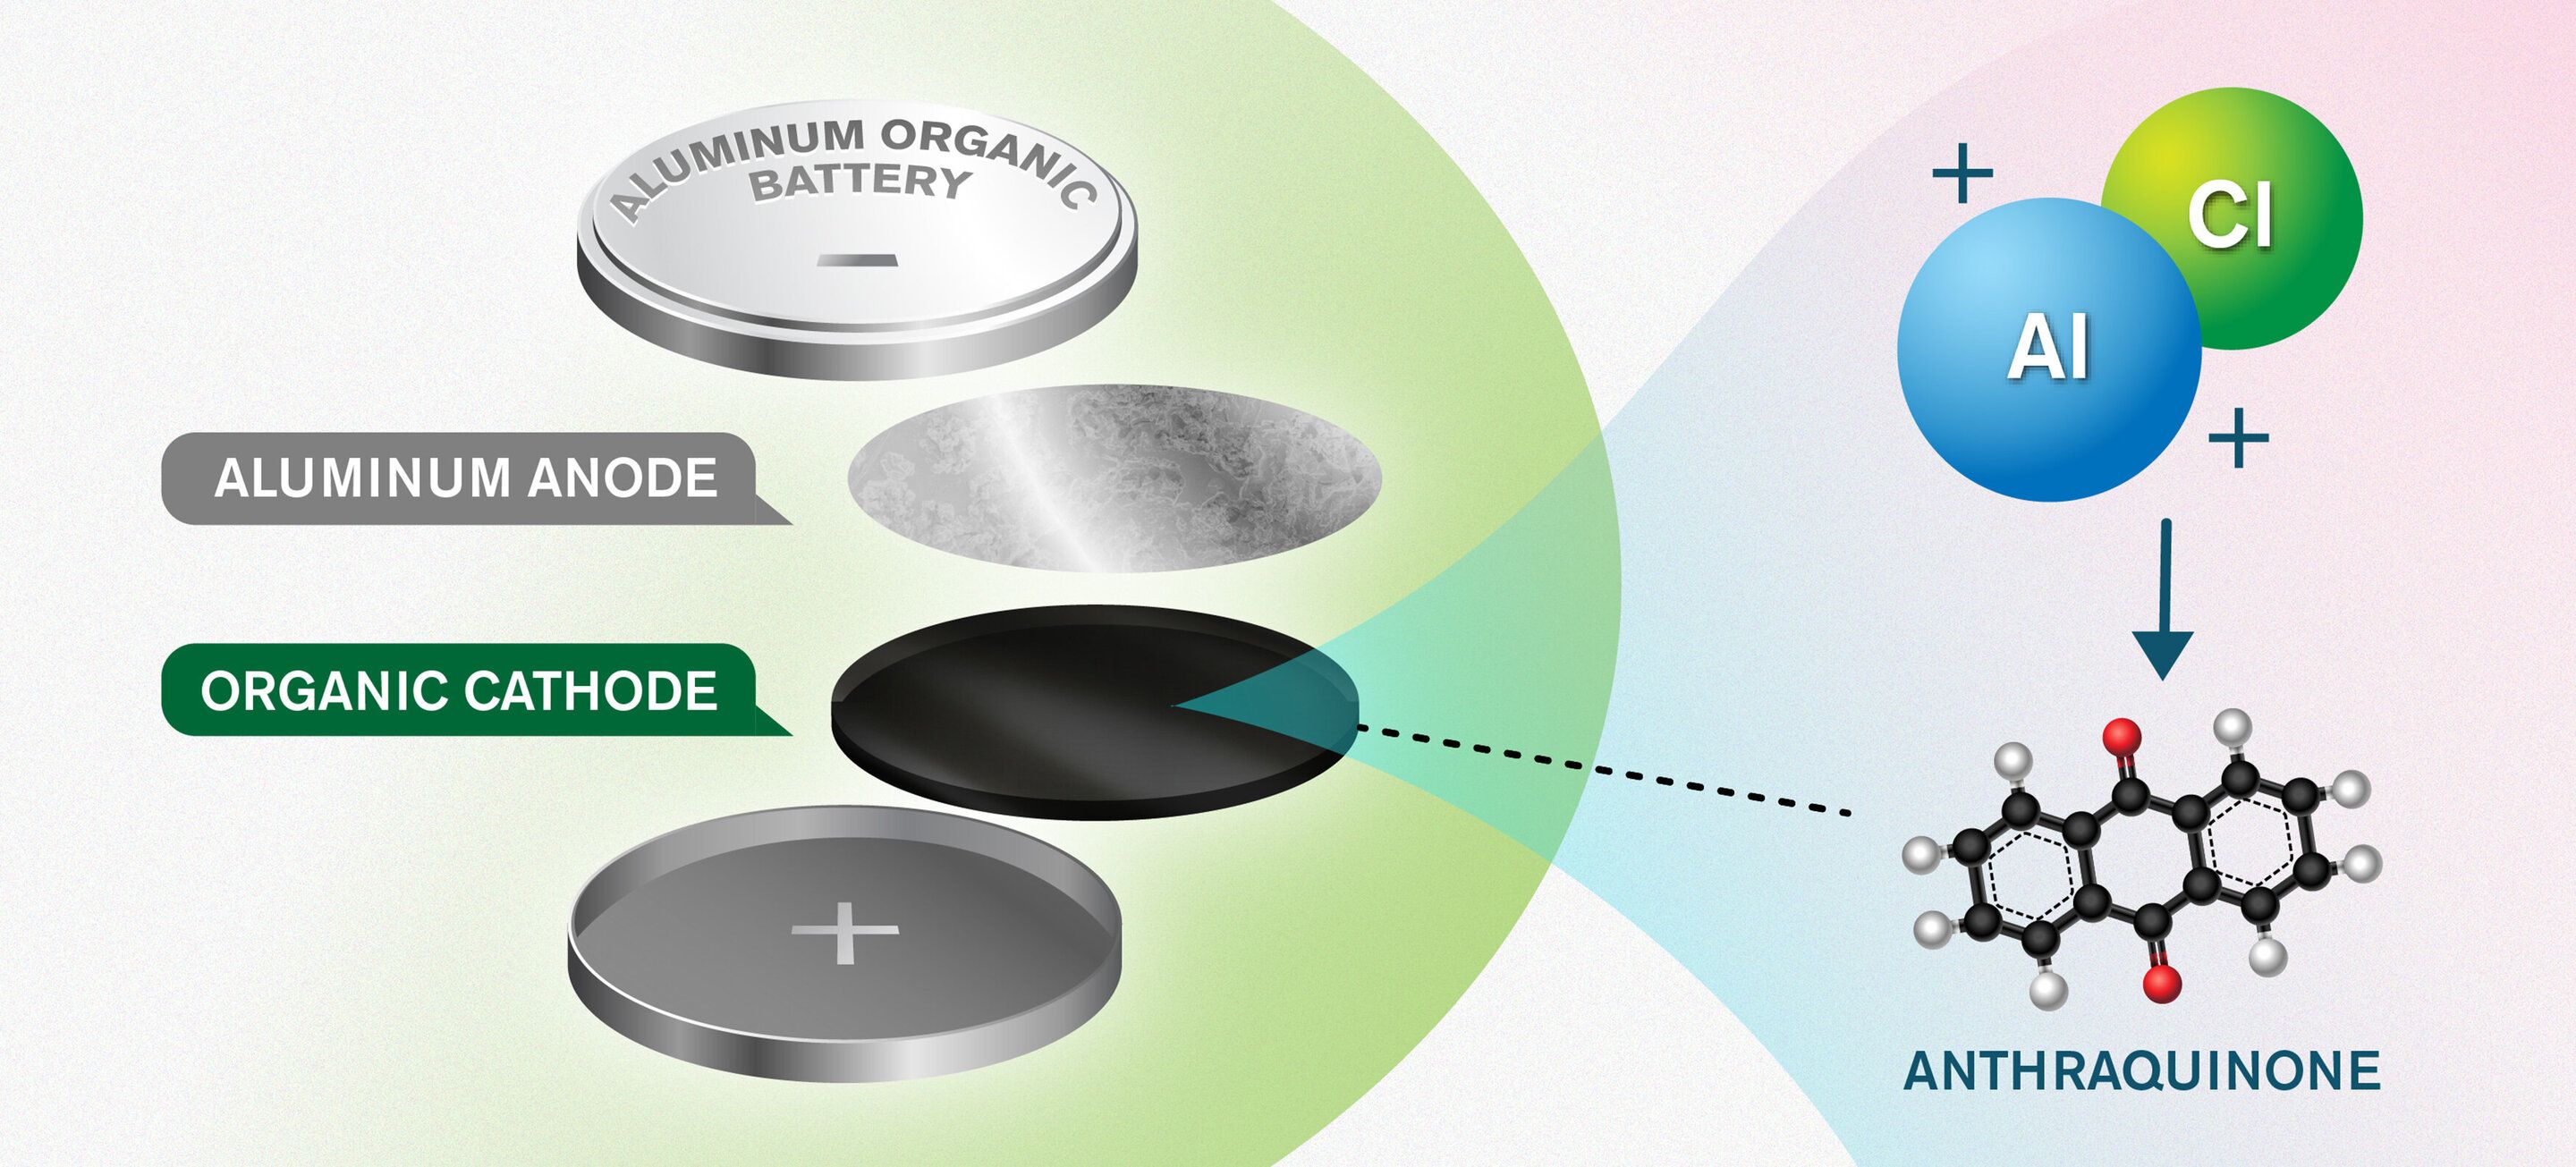 Nytt koncept öppnar för miljövänligare batterier 1